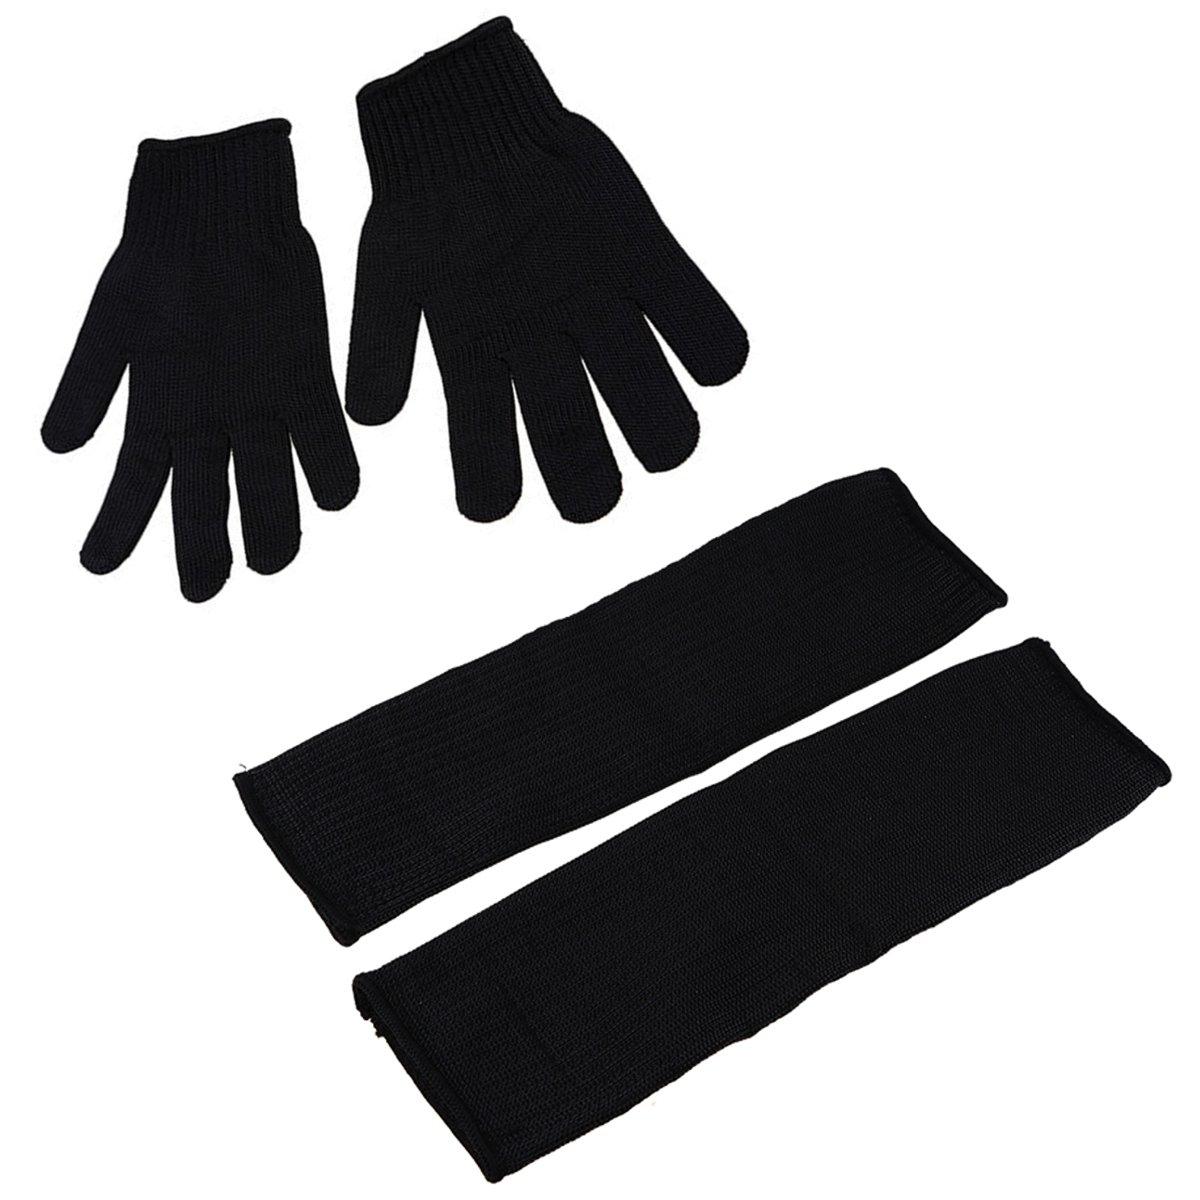 Latex industri?le rubberen handschoen Zuur en alkali bestendig Corrosiebestendig zwart